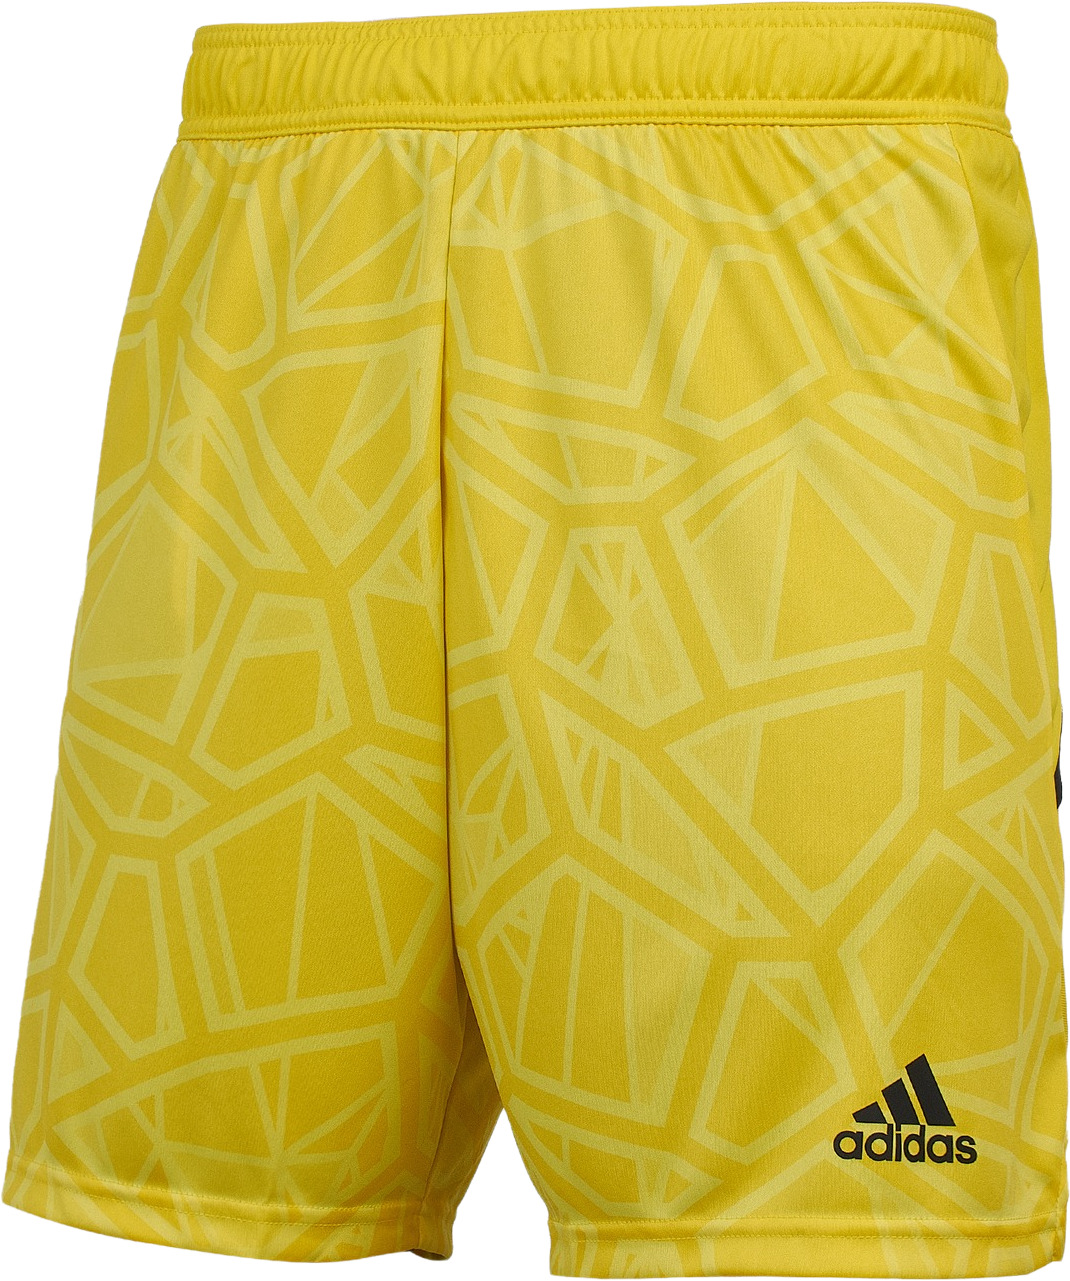 Шорты мужские Adidas HF0141 желтые M